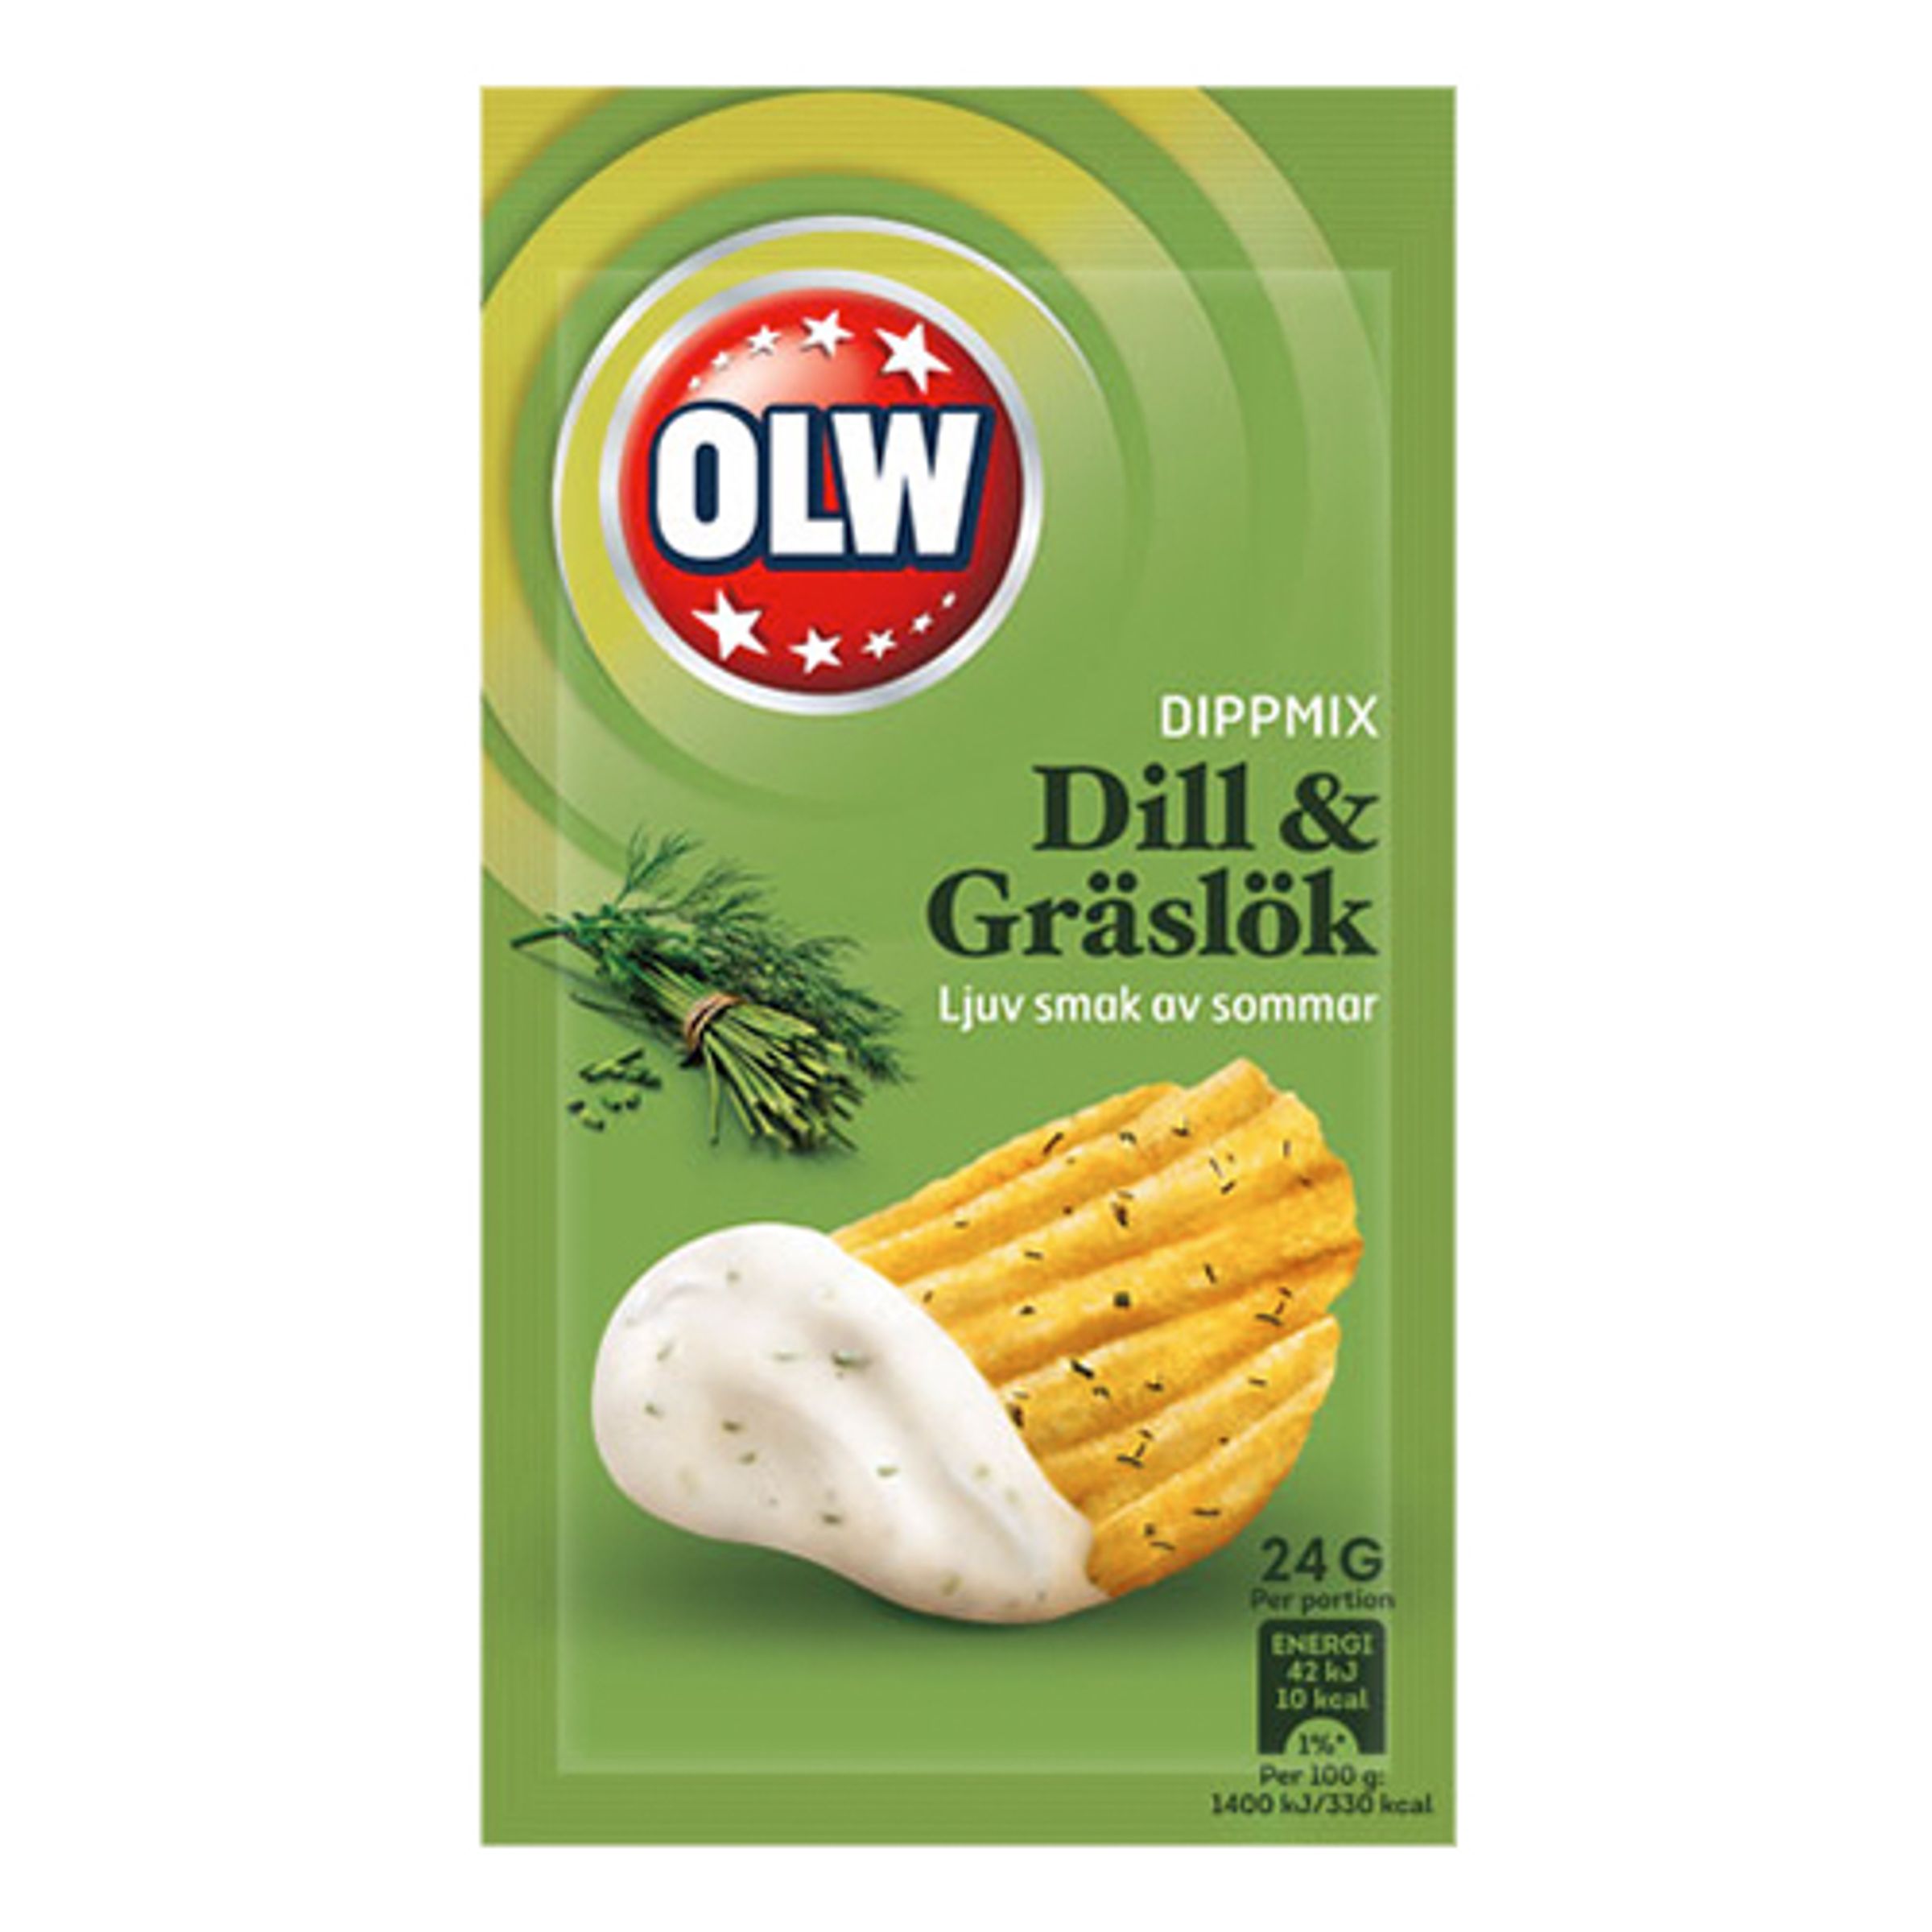 Läs mer om OLW Dippmix Dill & Gräslök